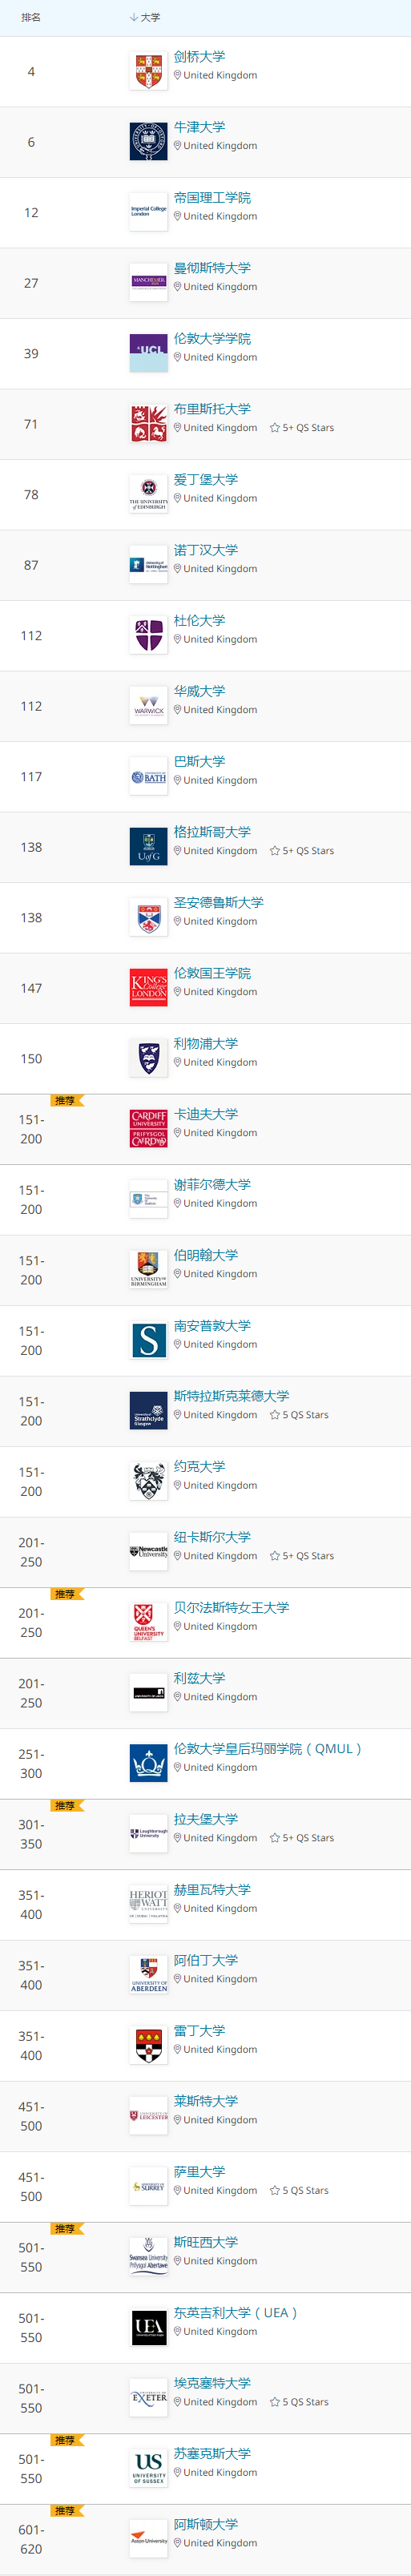 2021年QS世界大学学科排名发布！抢看五大学科的世界Top10排名  数据 QS排名 排名 第8张